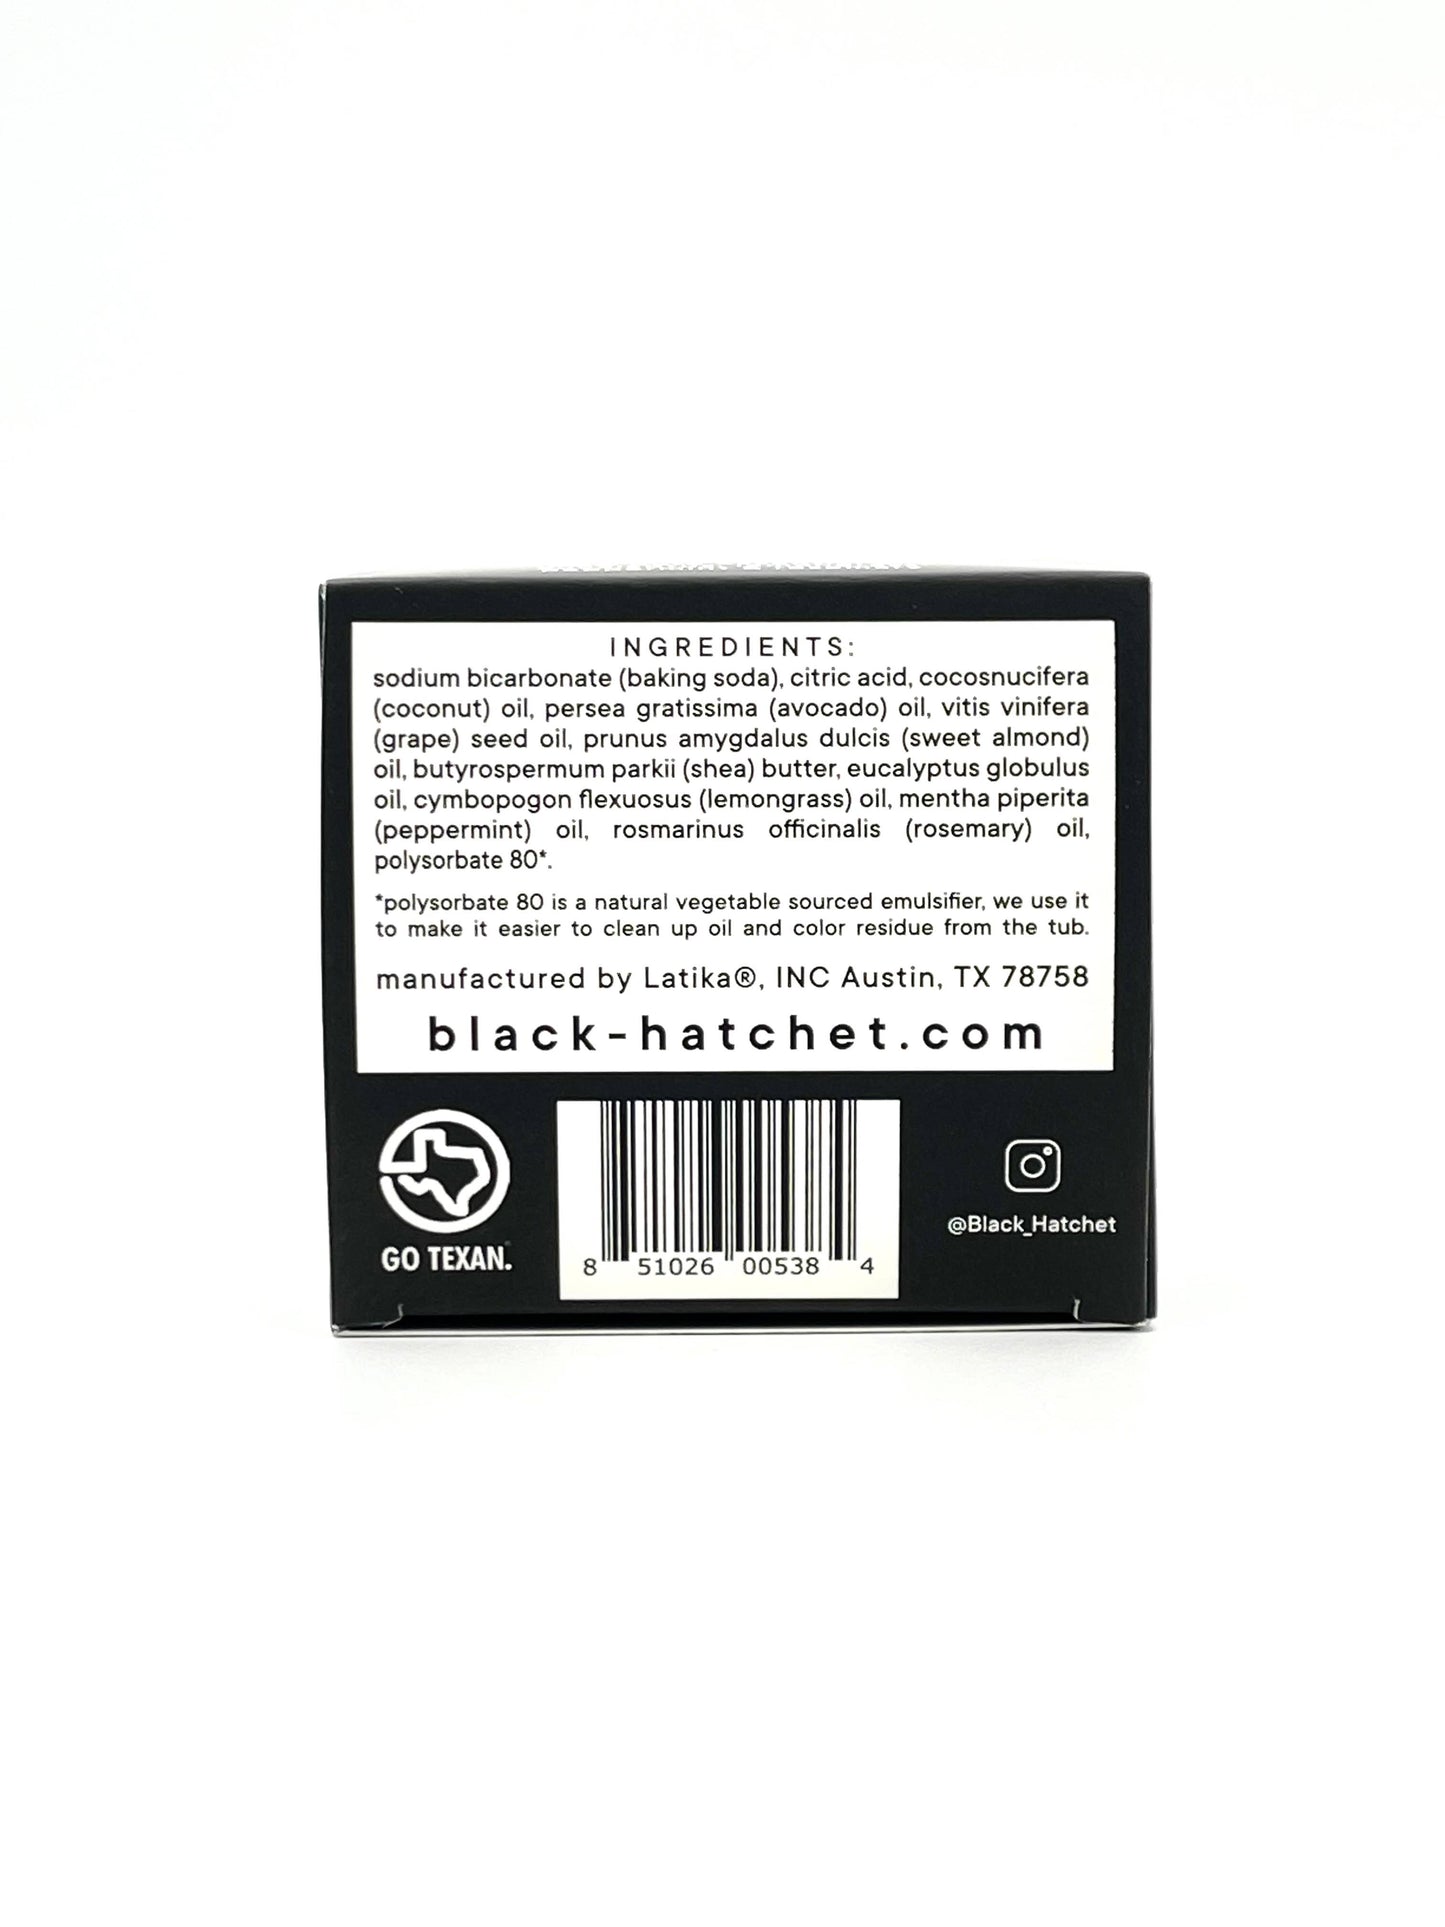 Black Hatchet Bath Bomb  | Gift for Men